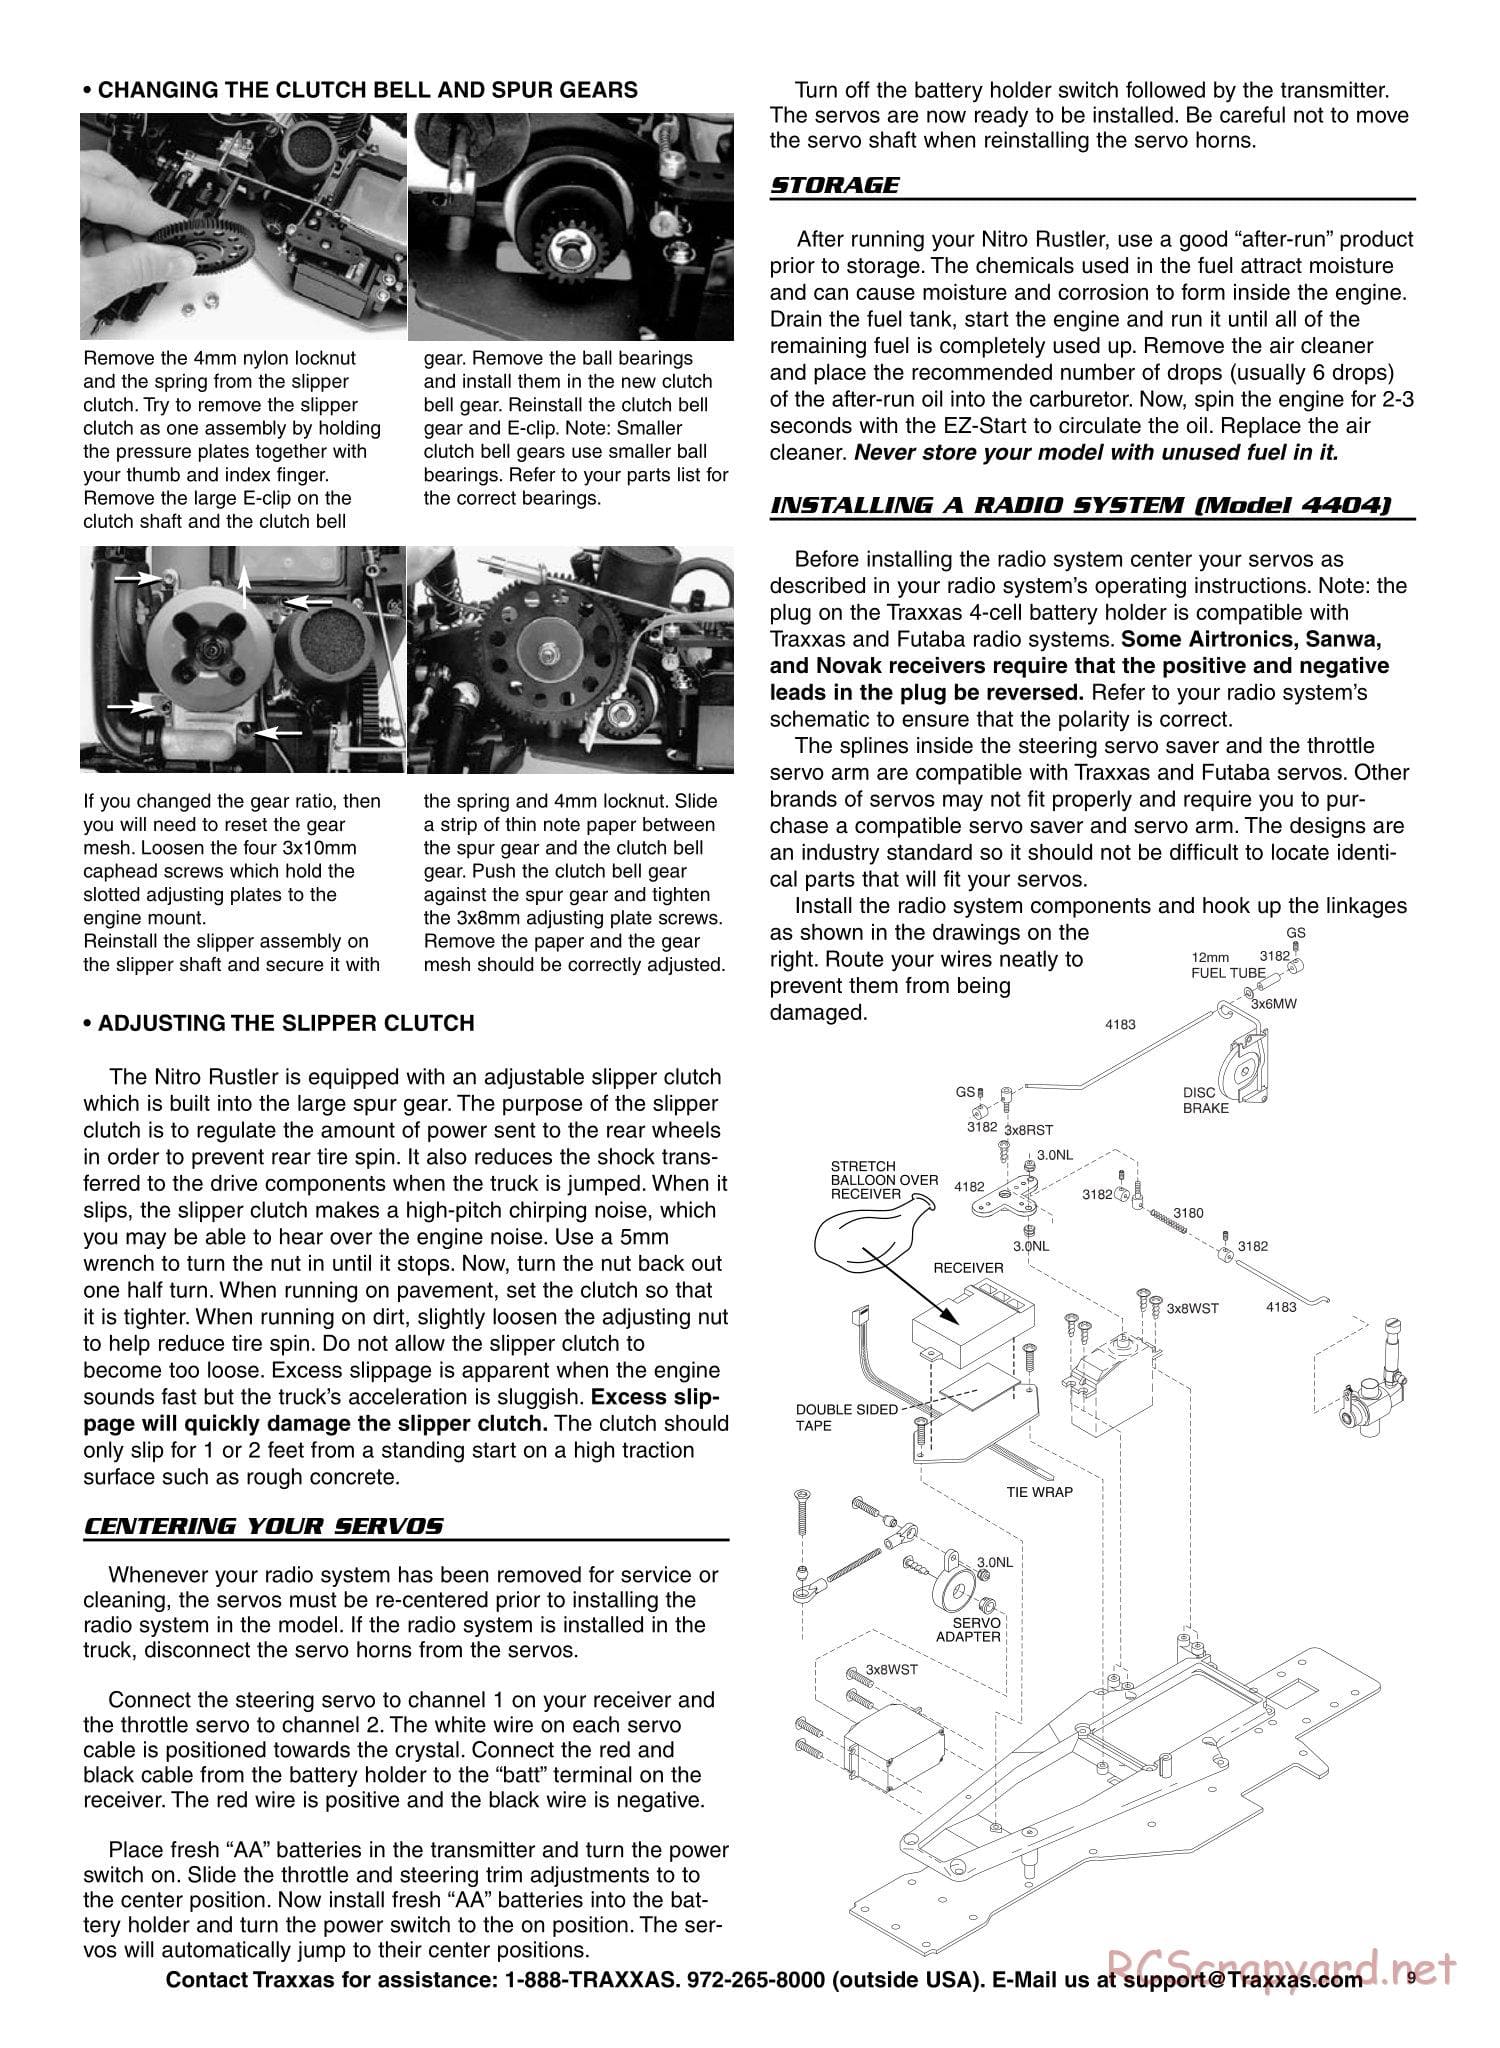 Traxxas - Nitro Rustler - Manual - Page 9